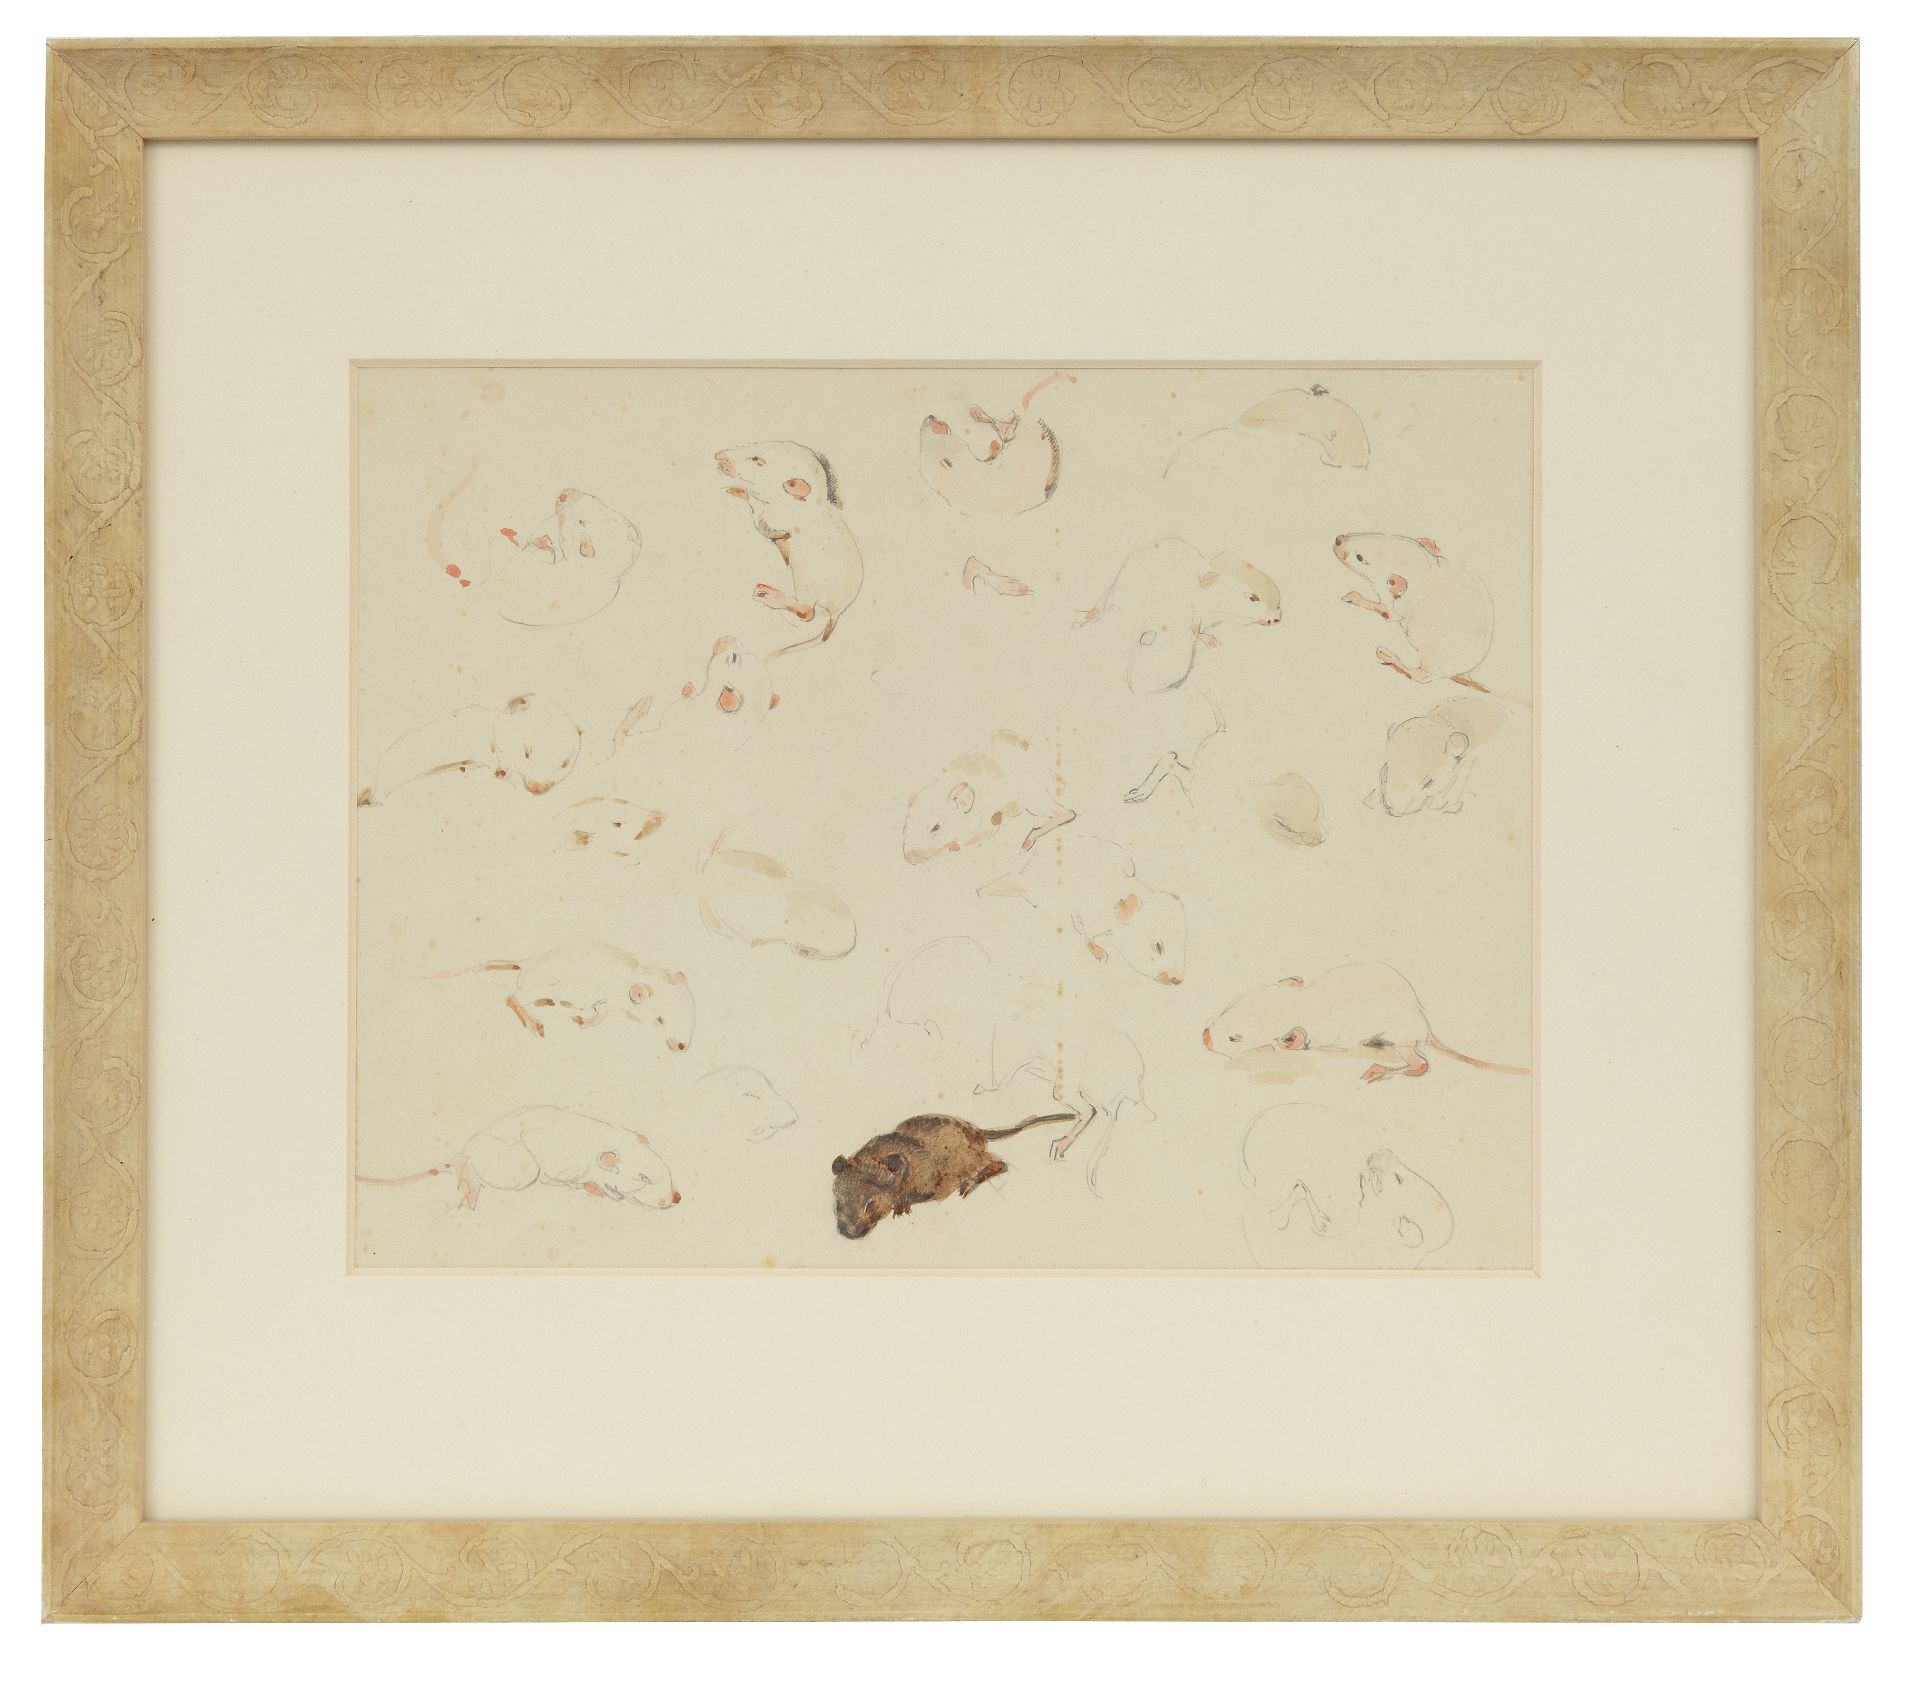 Greta Bruigom | Aquarellen te Studie van muizen, dagen oud